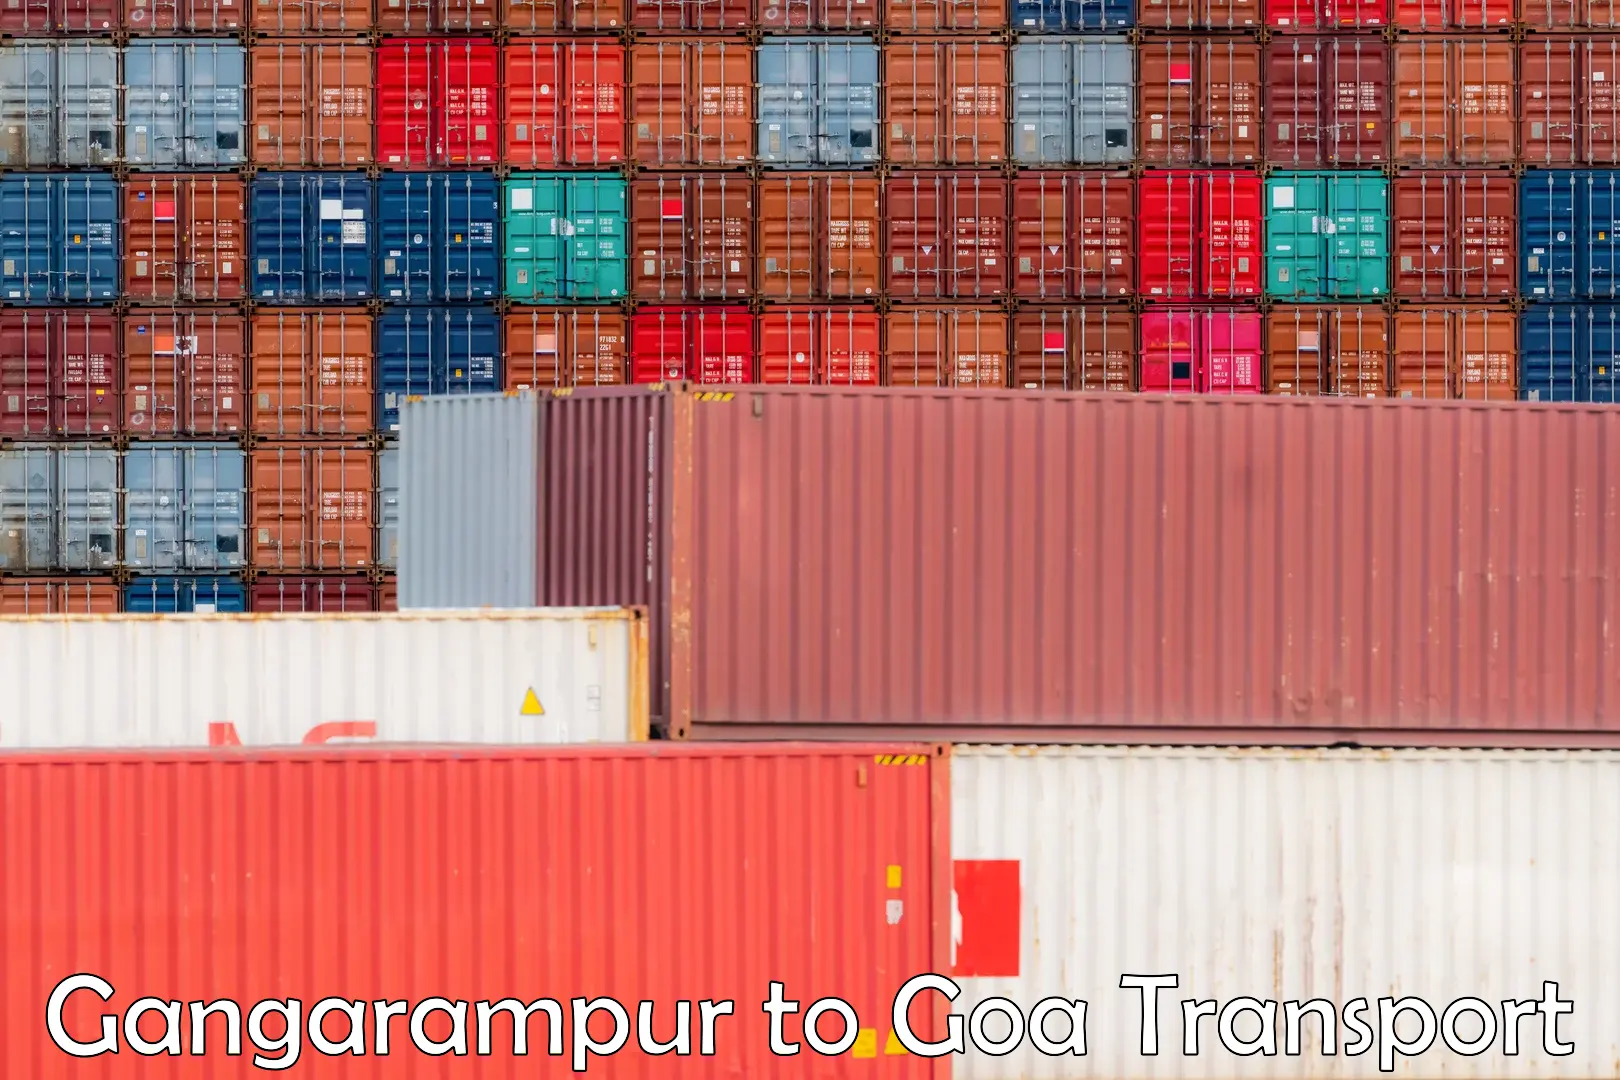 Container transport service Gangarampur to Mormugao Port